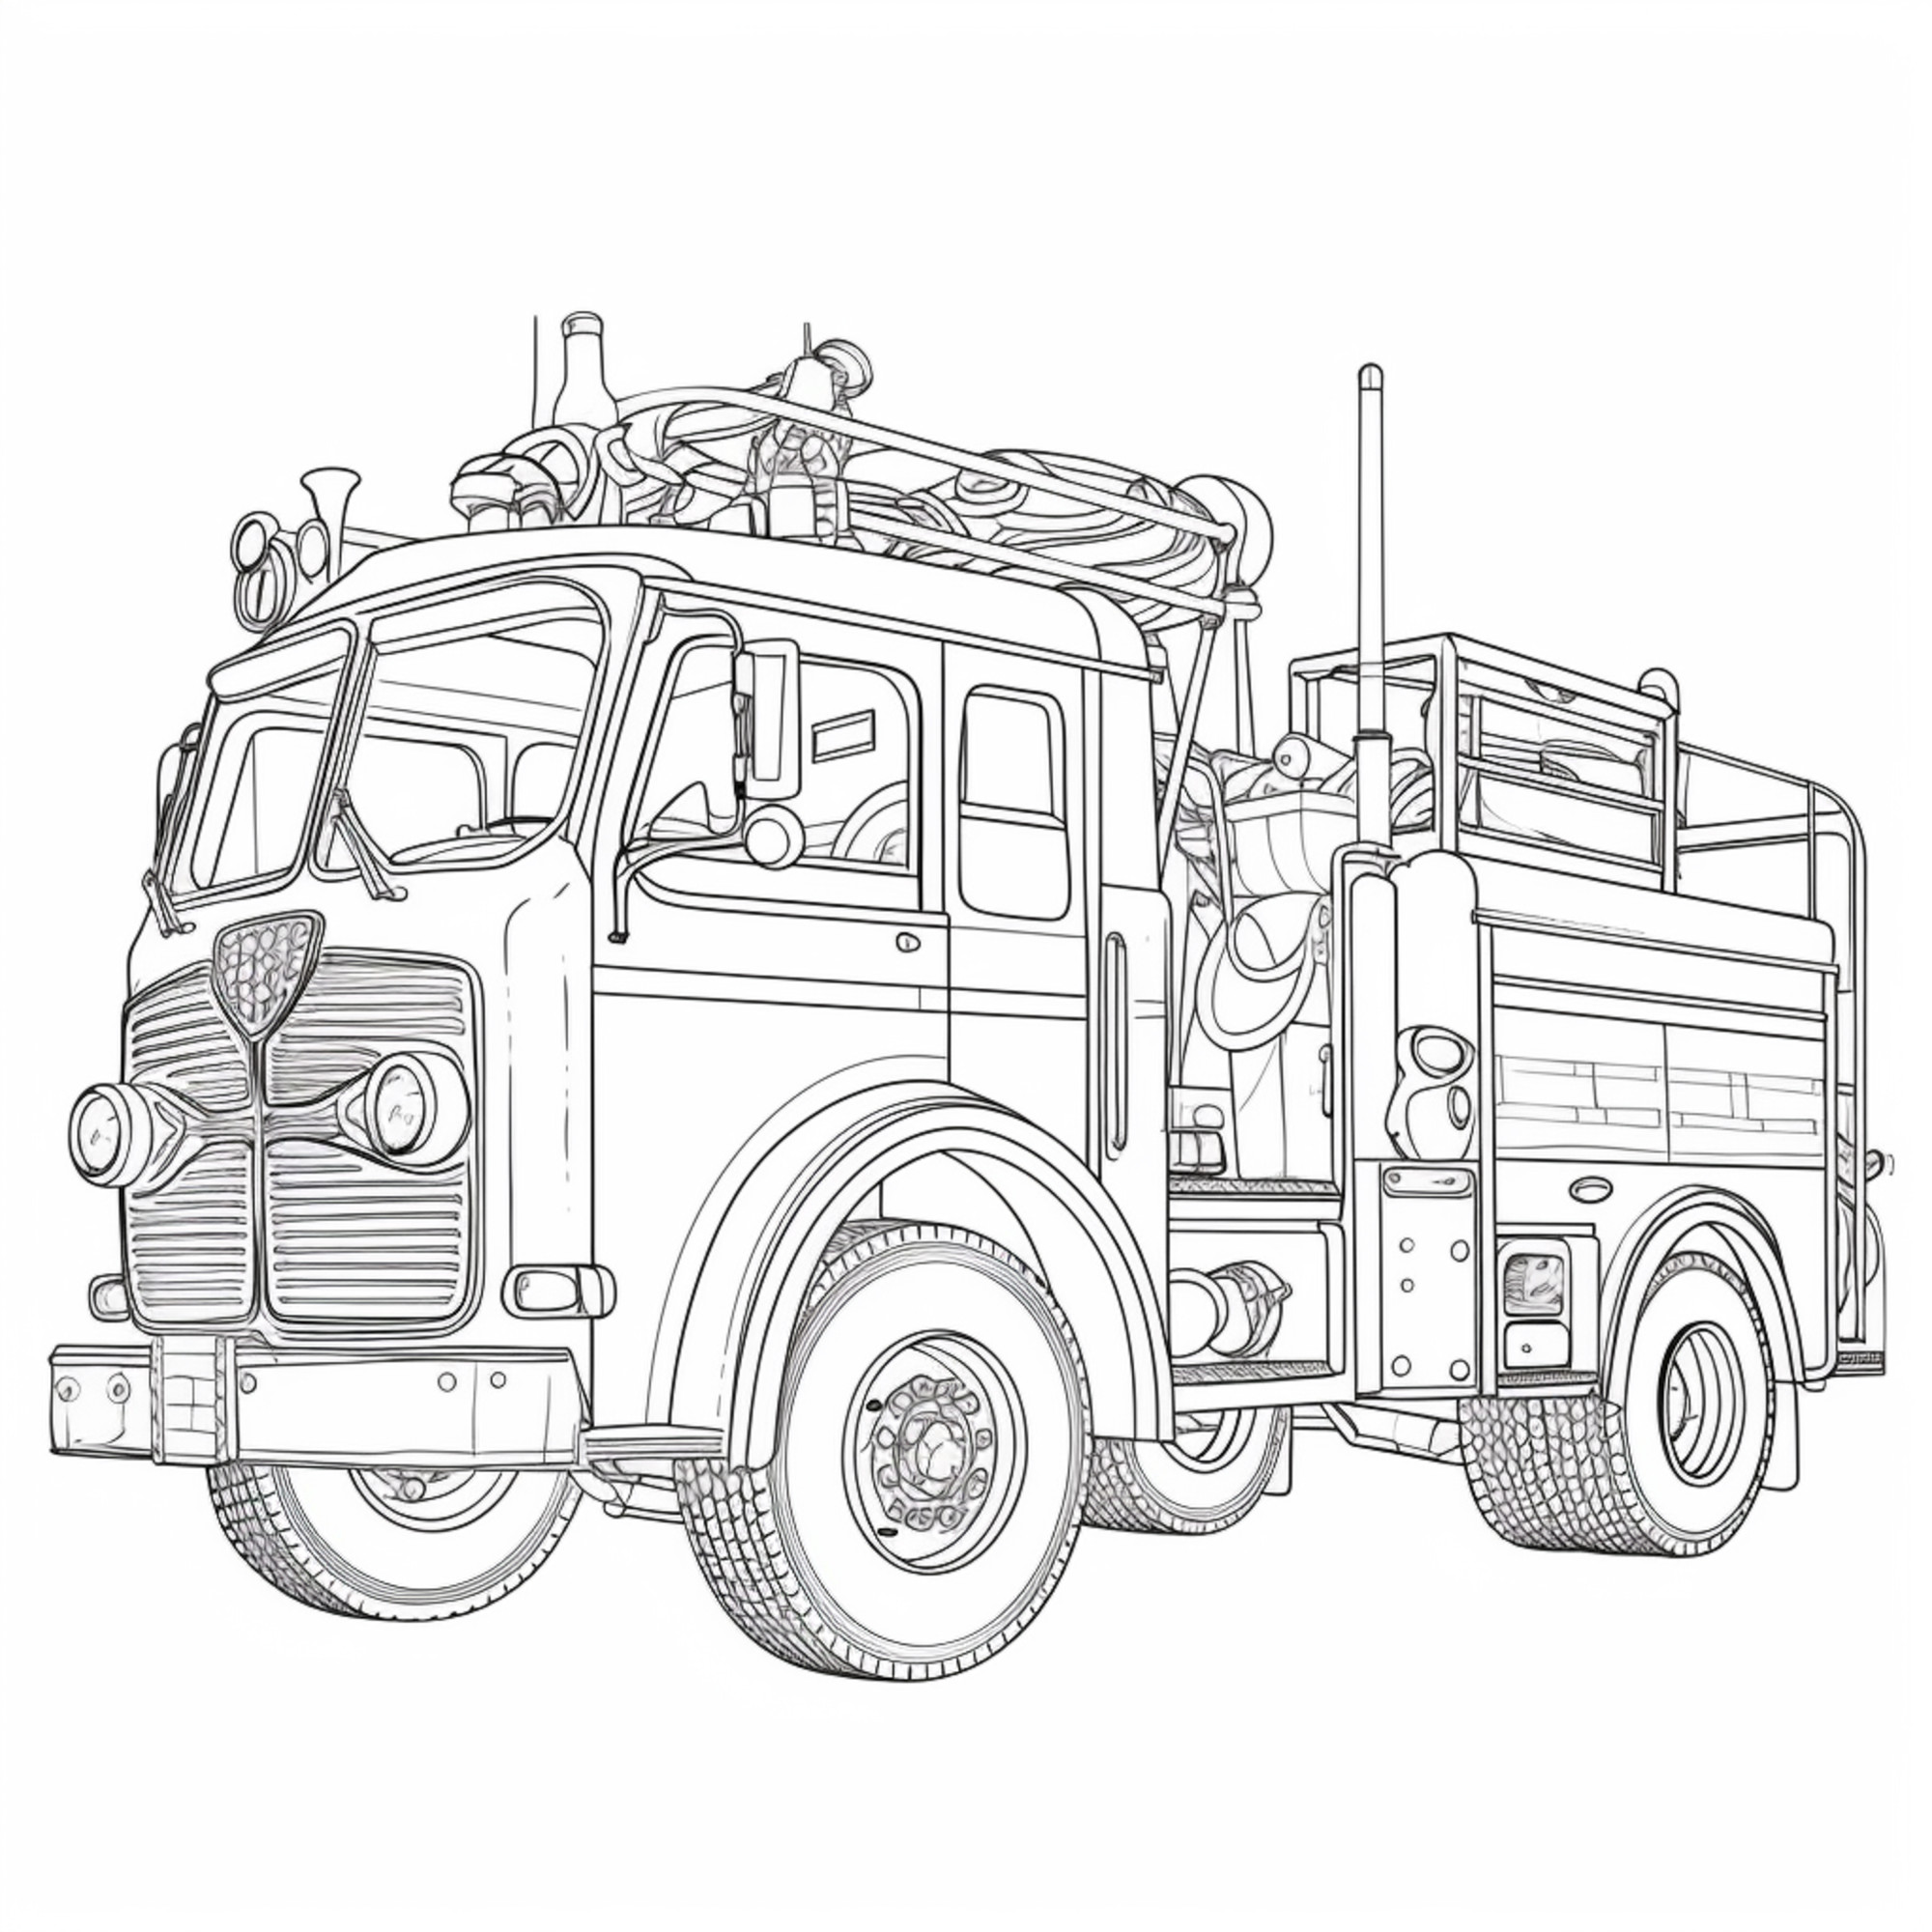 Раскраска для детей: пожарная машина «Огнедымка»